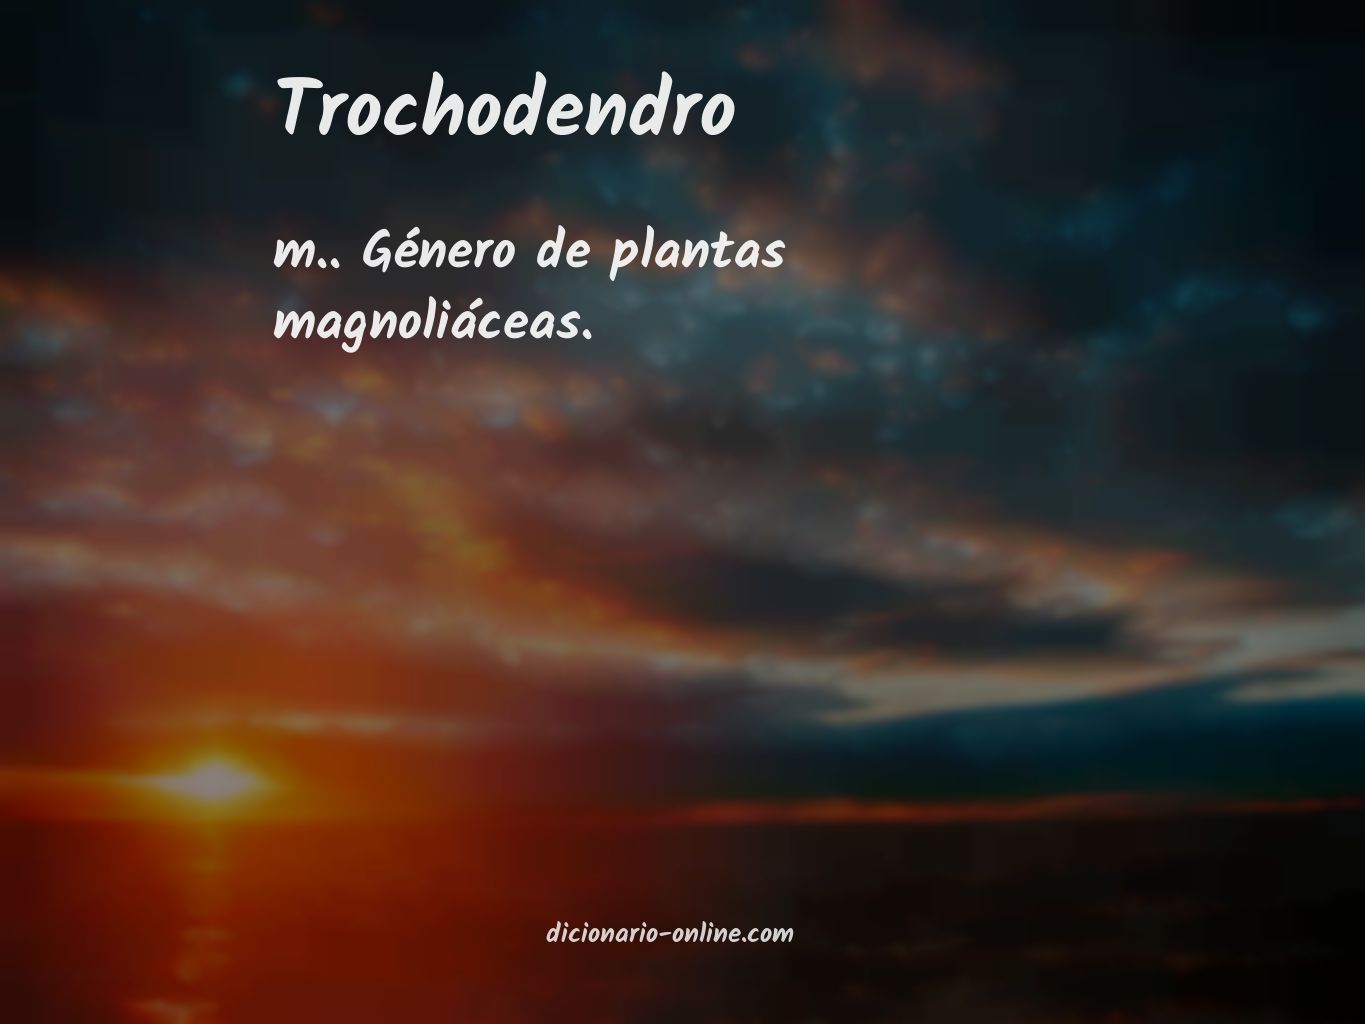 Significado de trochodendro